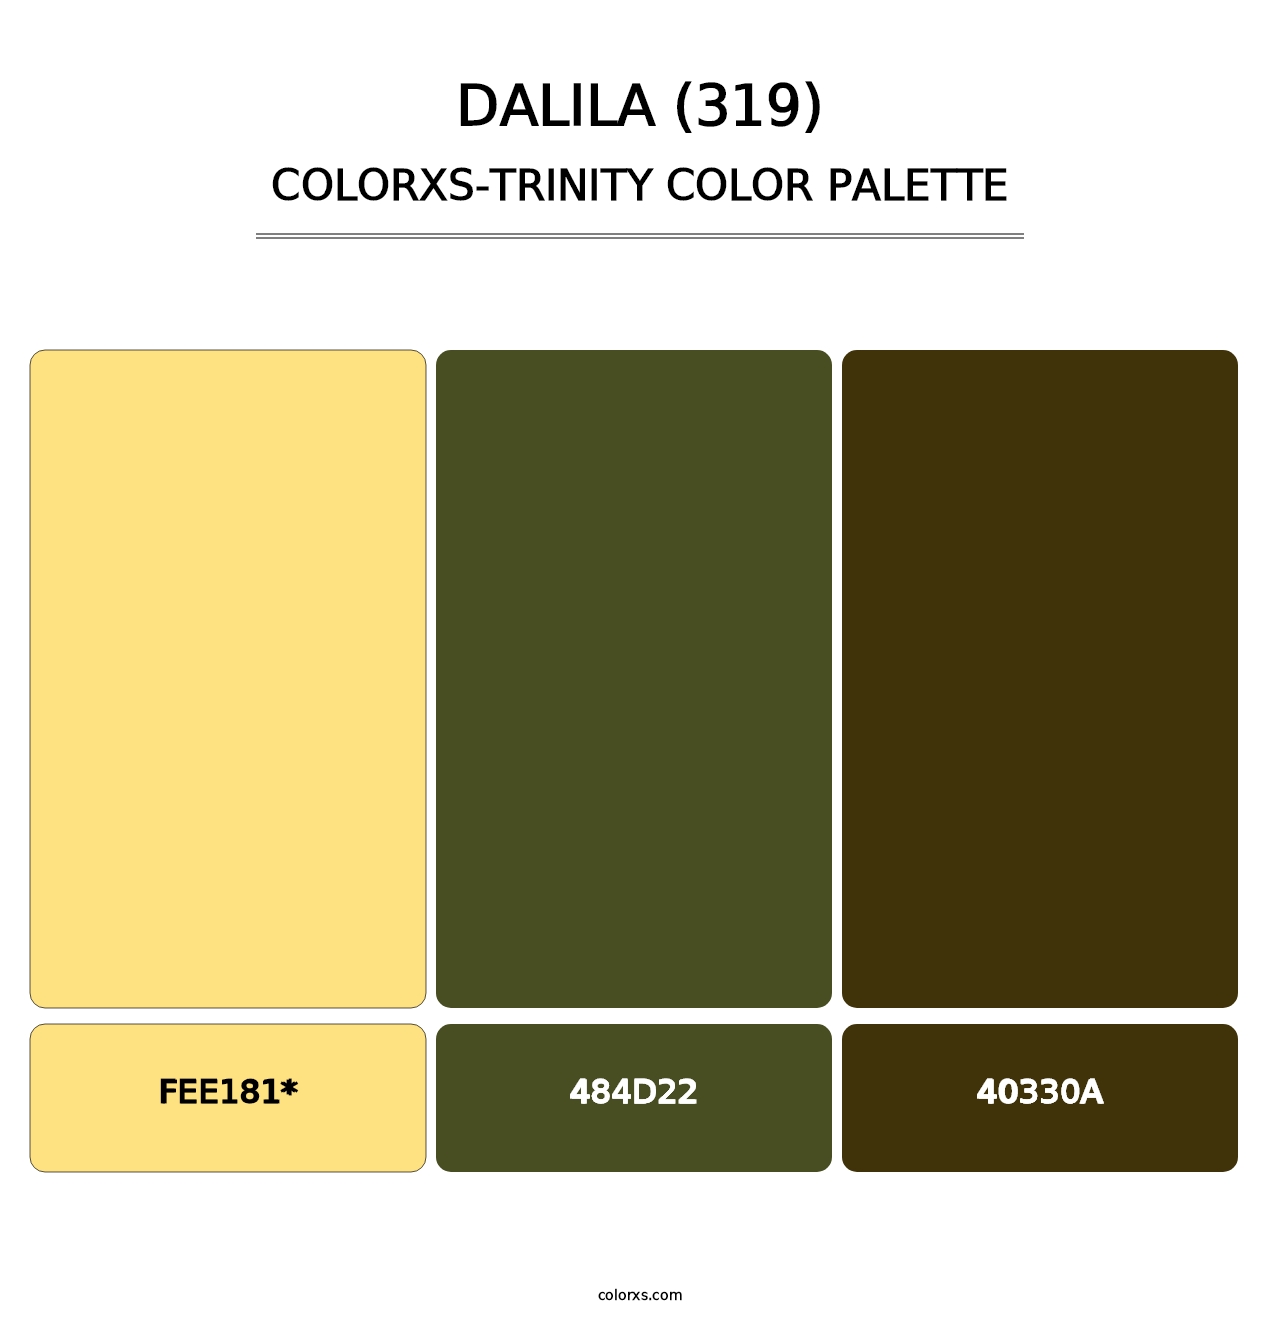 Dalila (319) - Colorxs Trinity Palette